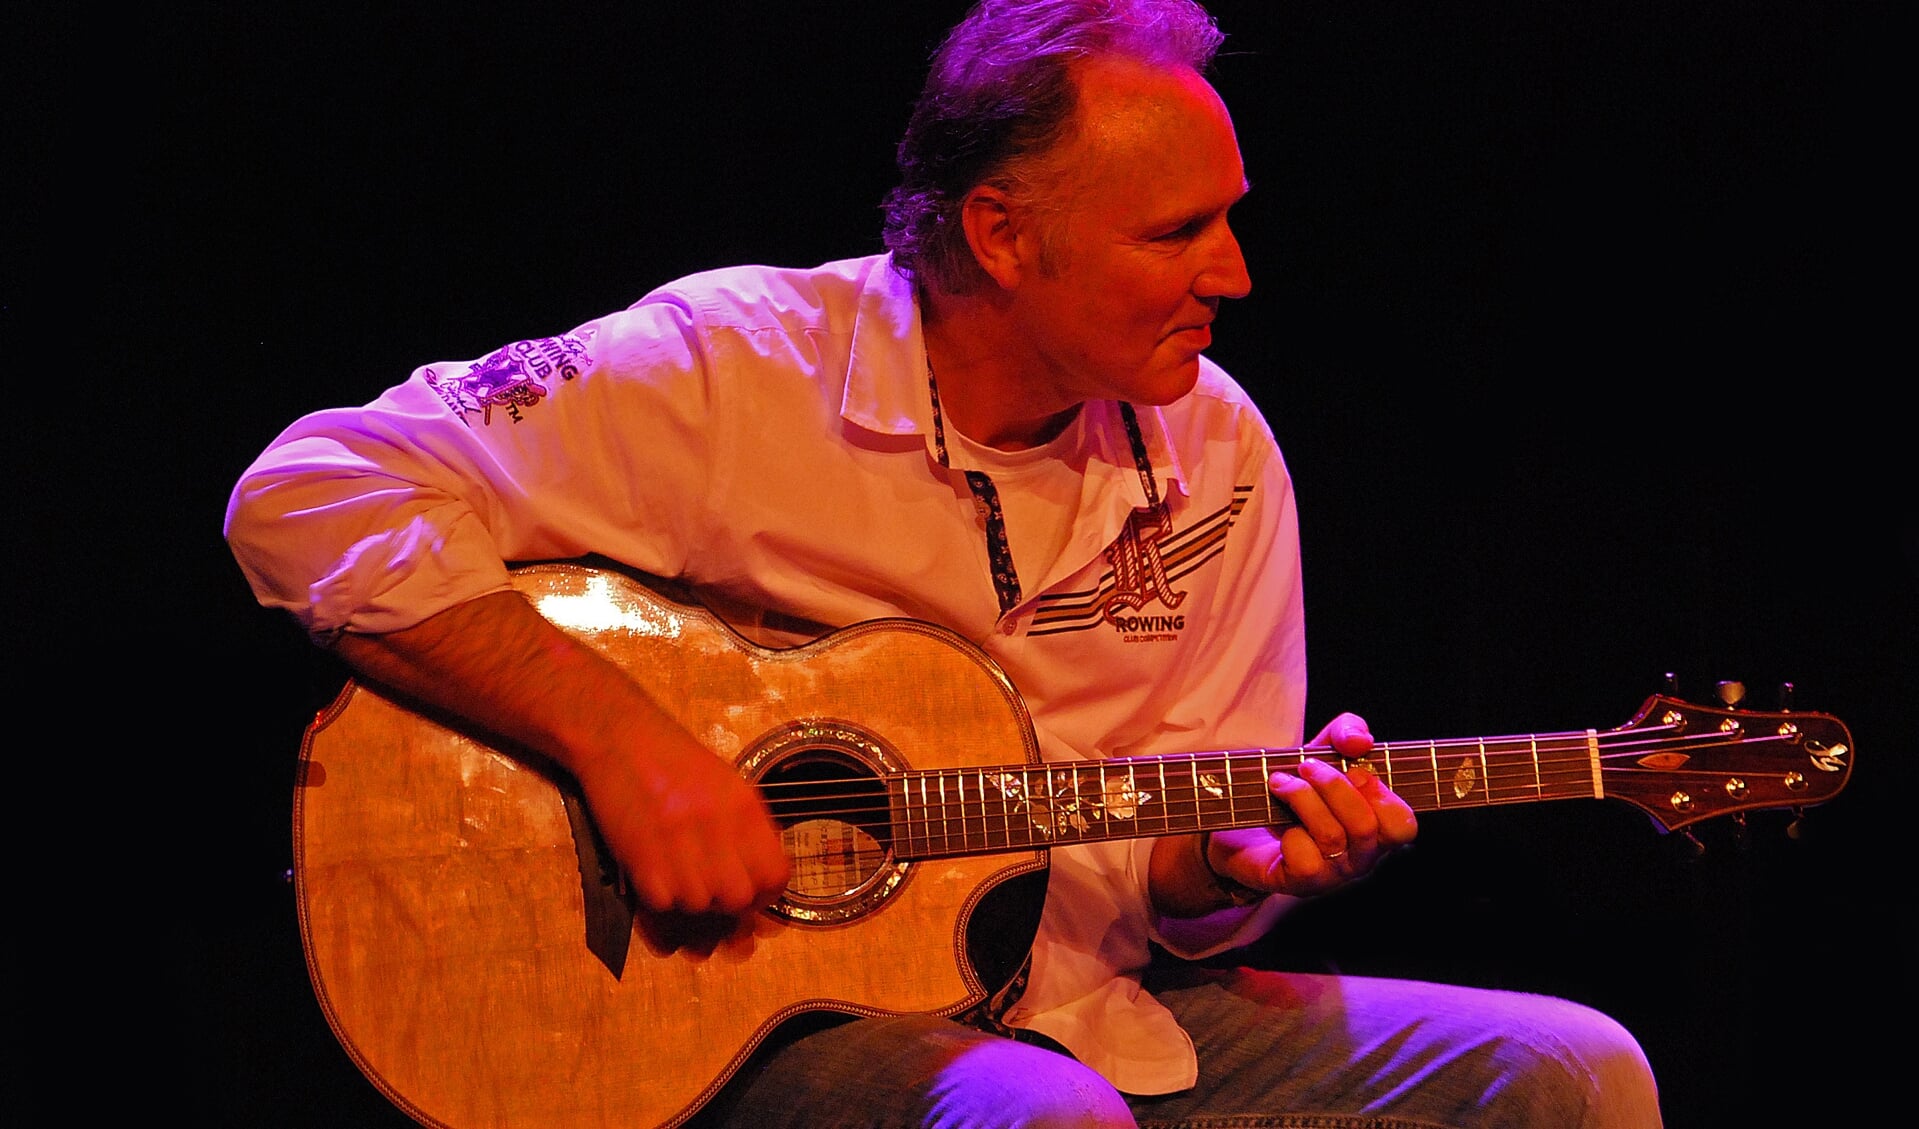 Alex van Voorst is een 59-jarige fingerstyle gitarist. 